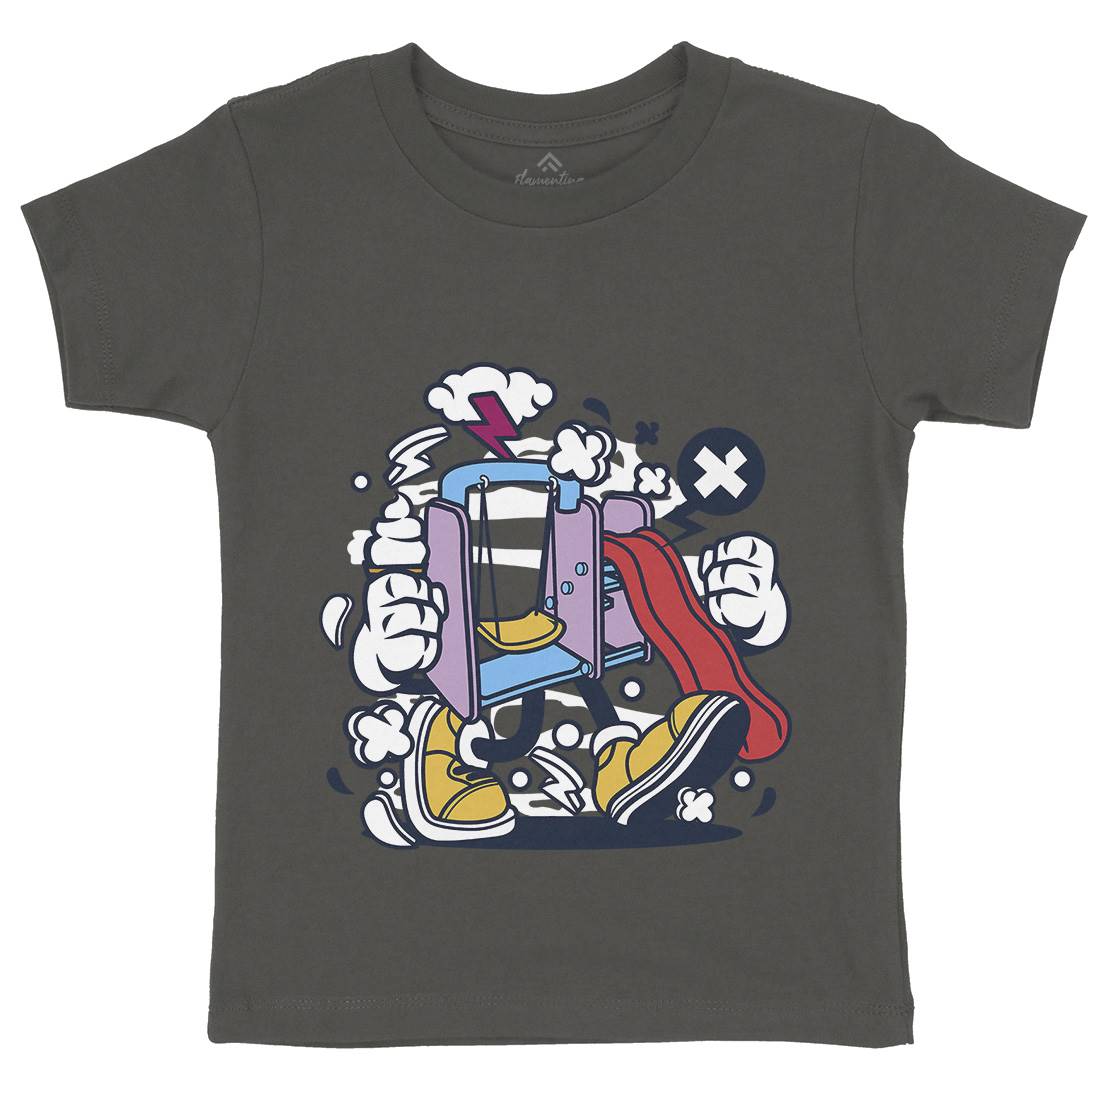 Playground Slide Kids Organic Crew Neck T-Shirt Retro C248